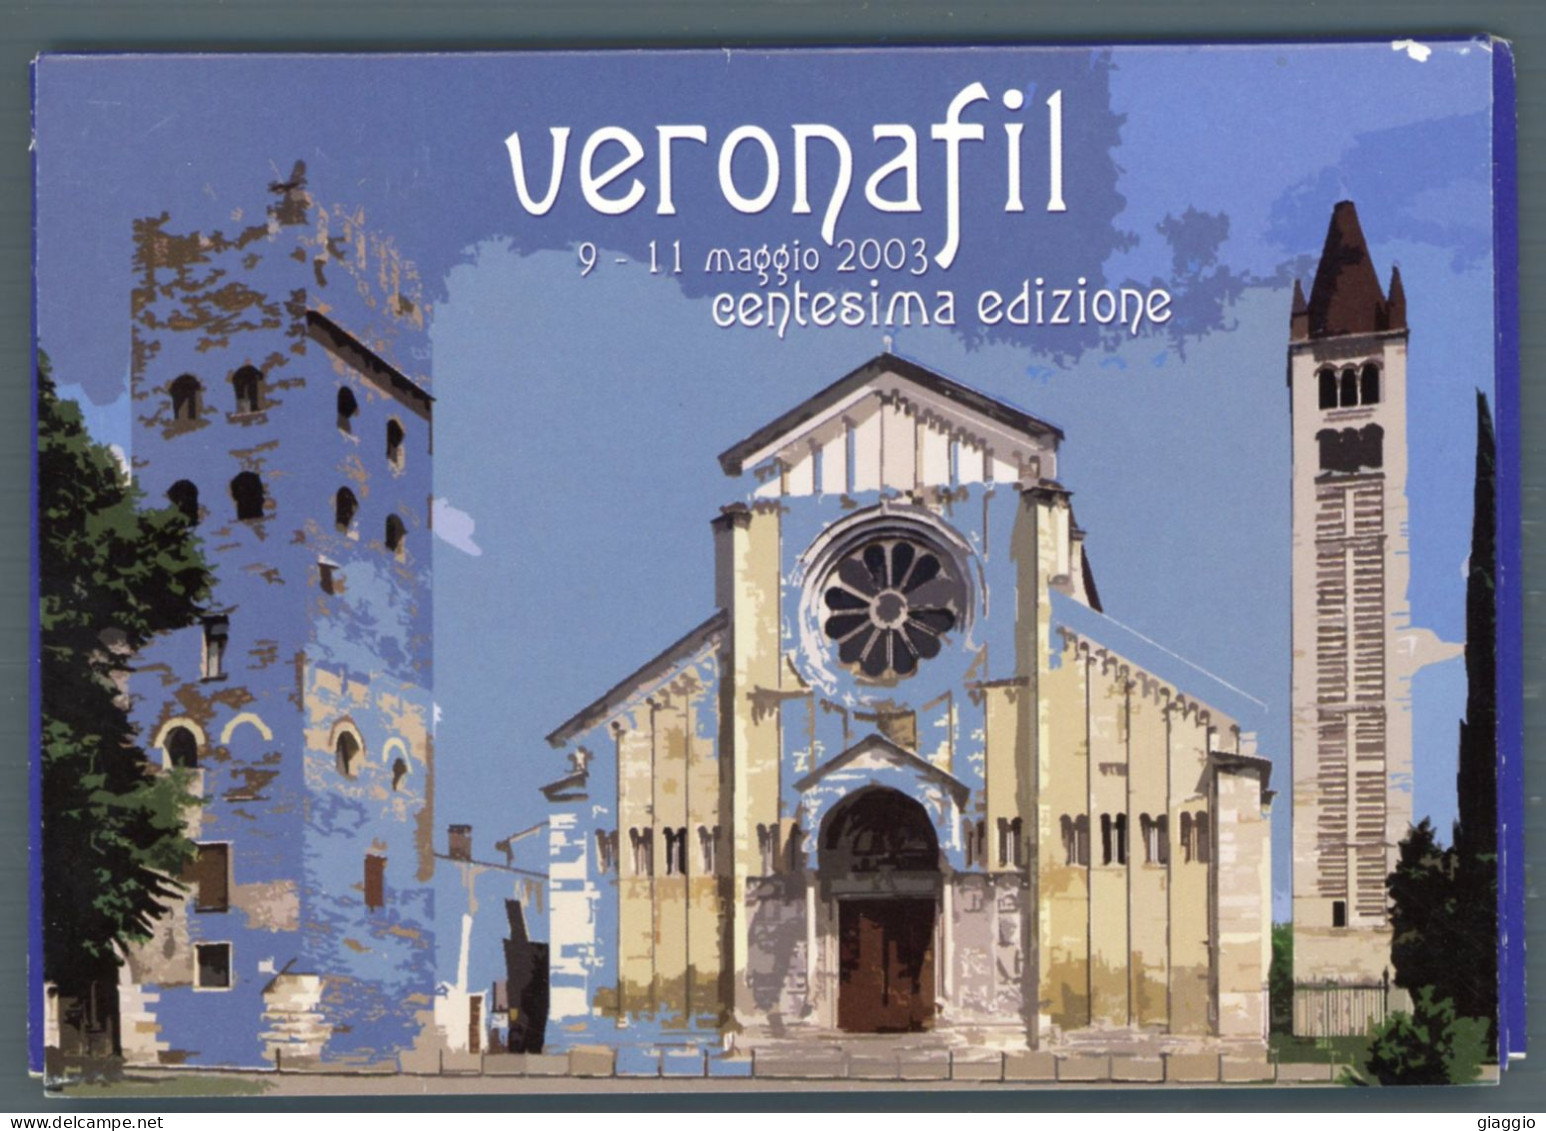 °°° Francobolli - N. 1874 - Vaticano Cartoline Postali Veronafil °°° - Interi Postali